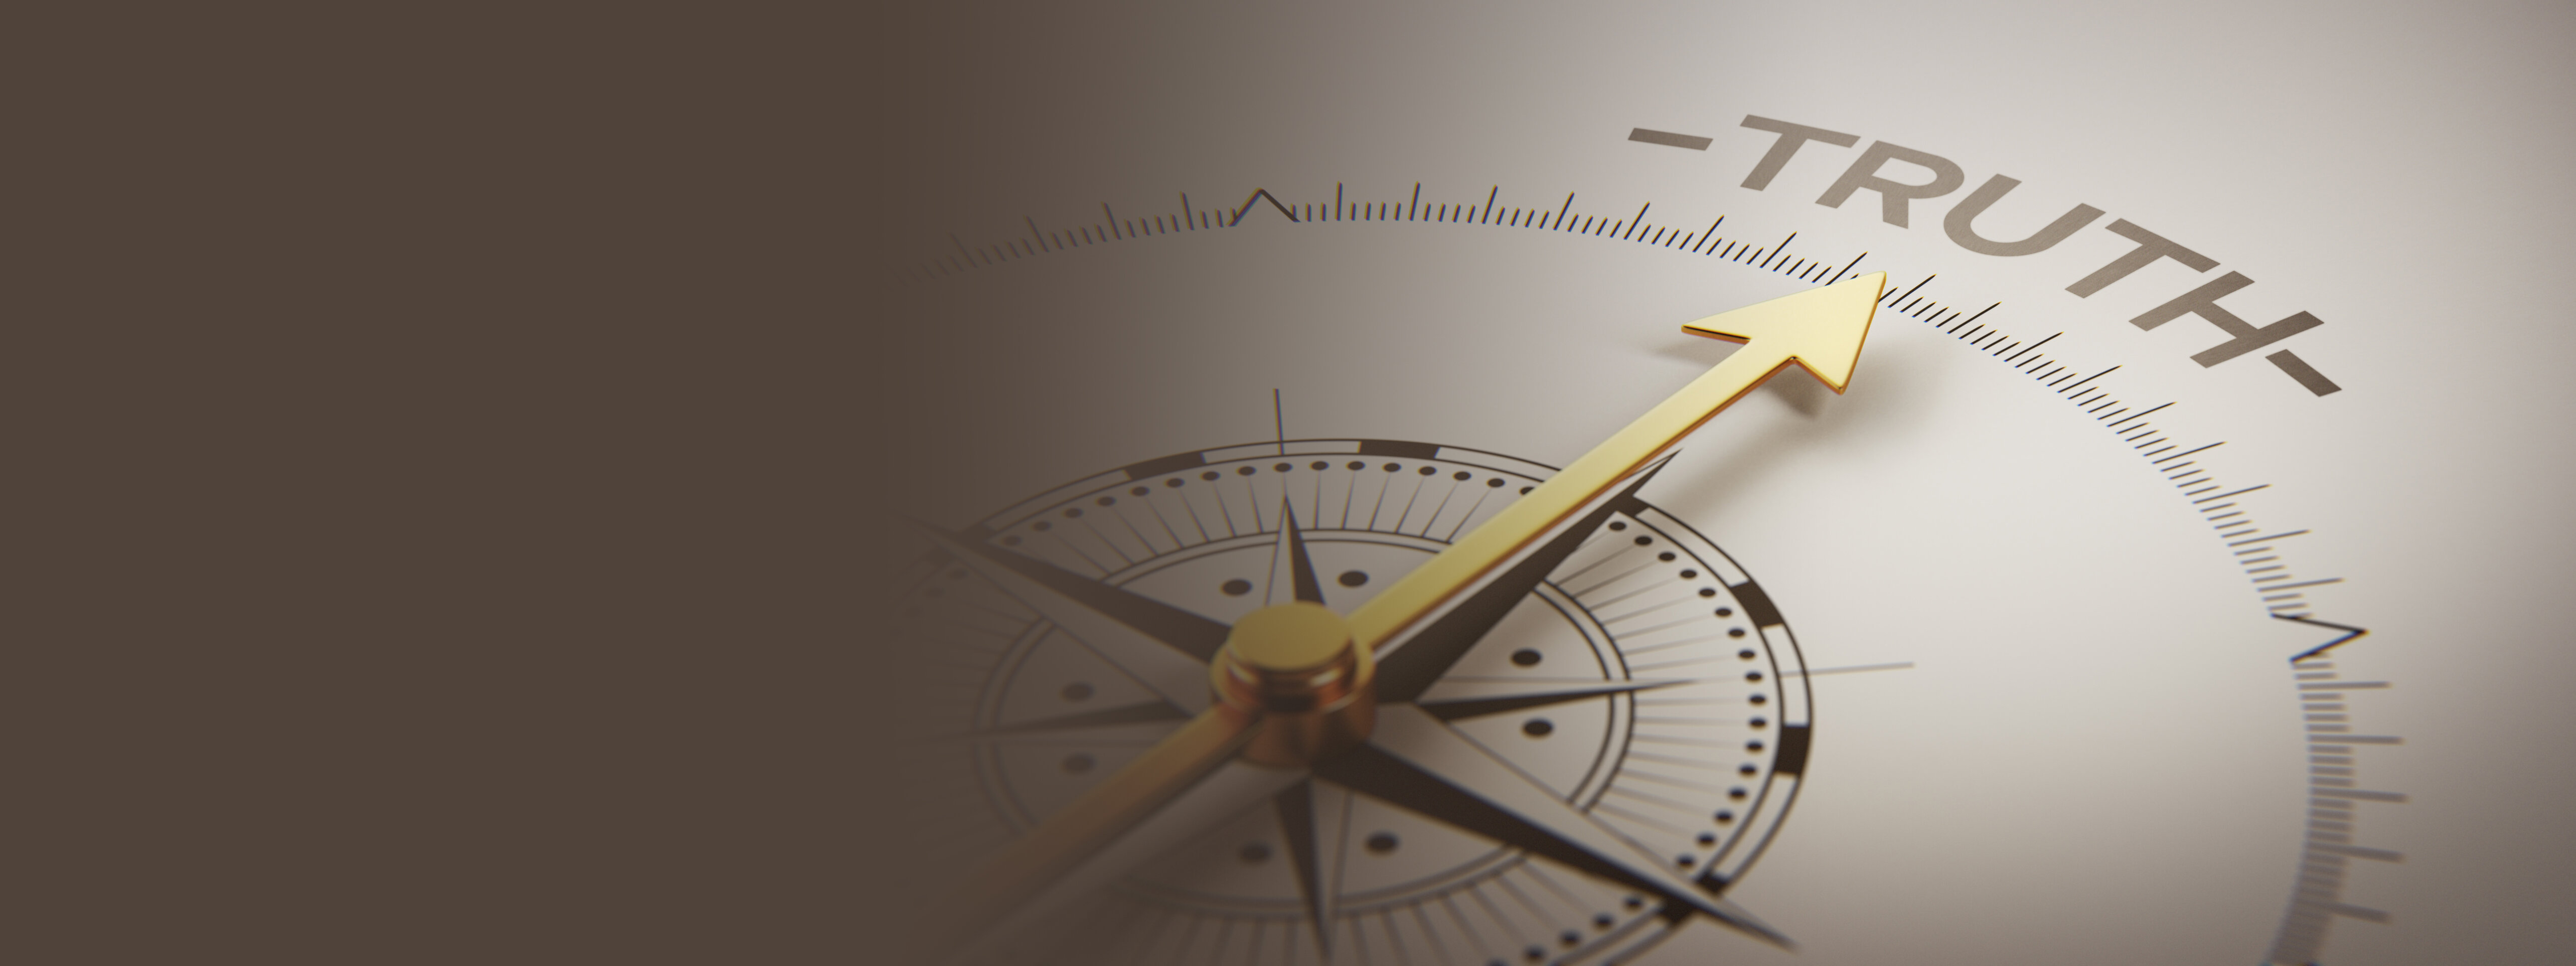 Kompass als Symbolbild für einen Single-Point-of-Truth